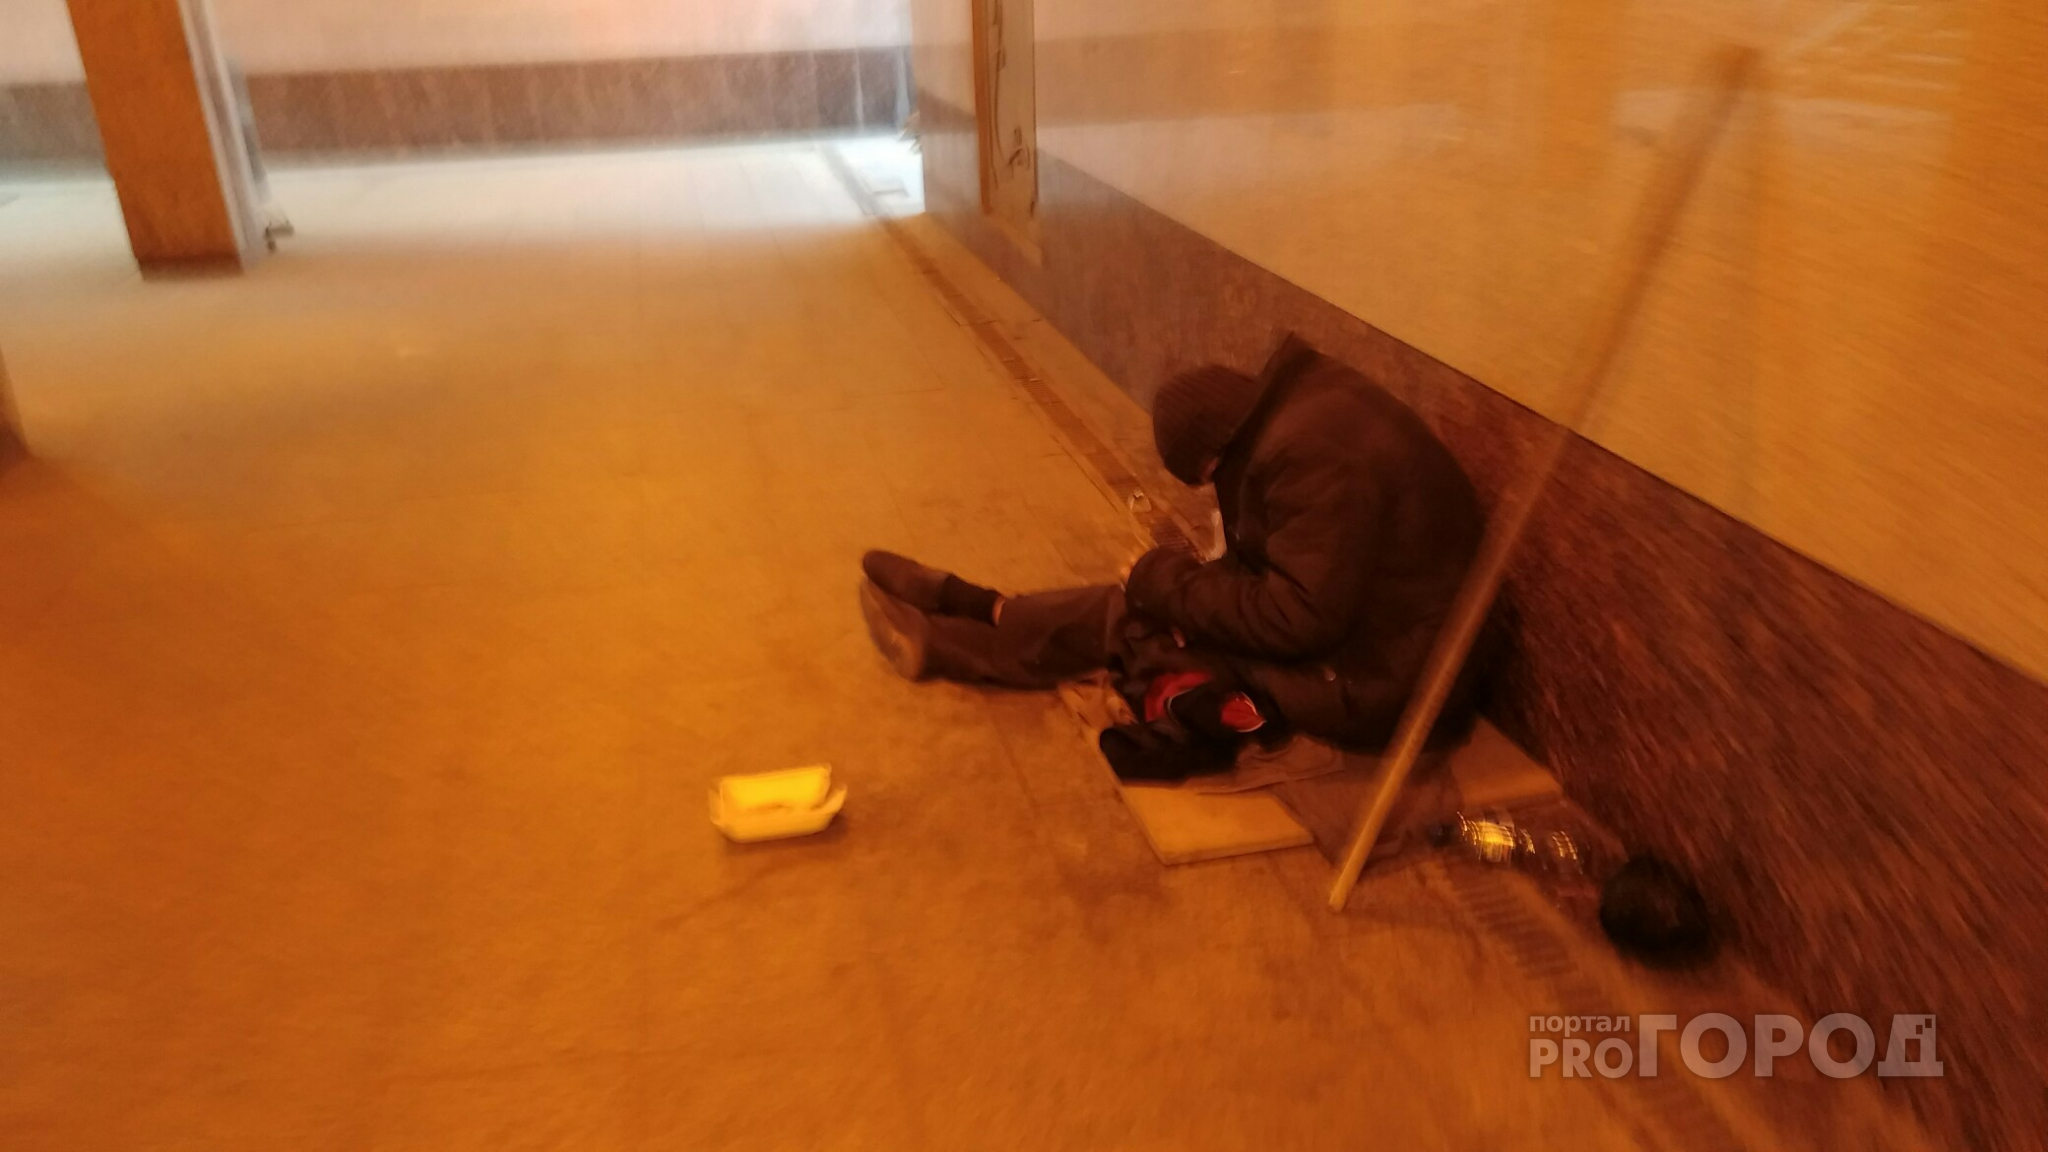 Борьба с бедностью в Чувашии будет стоить миллиард рублей